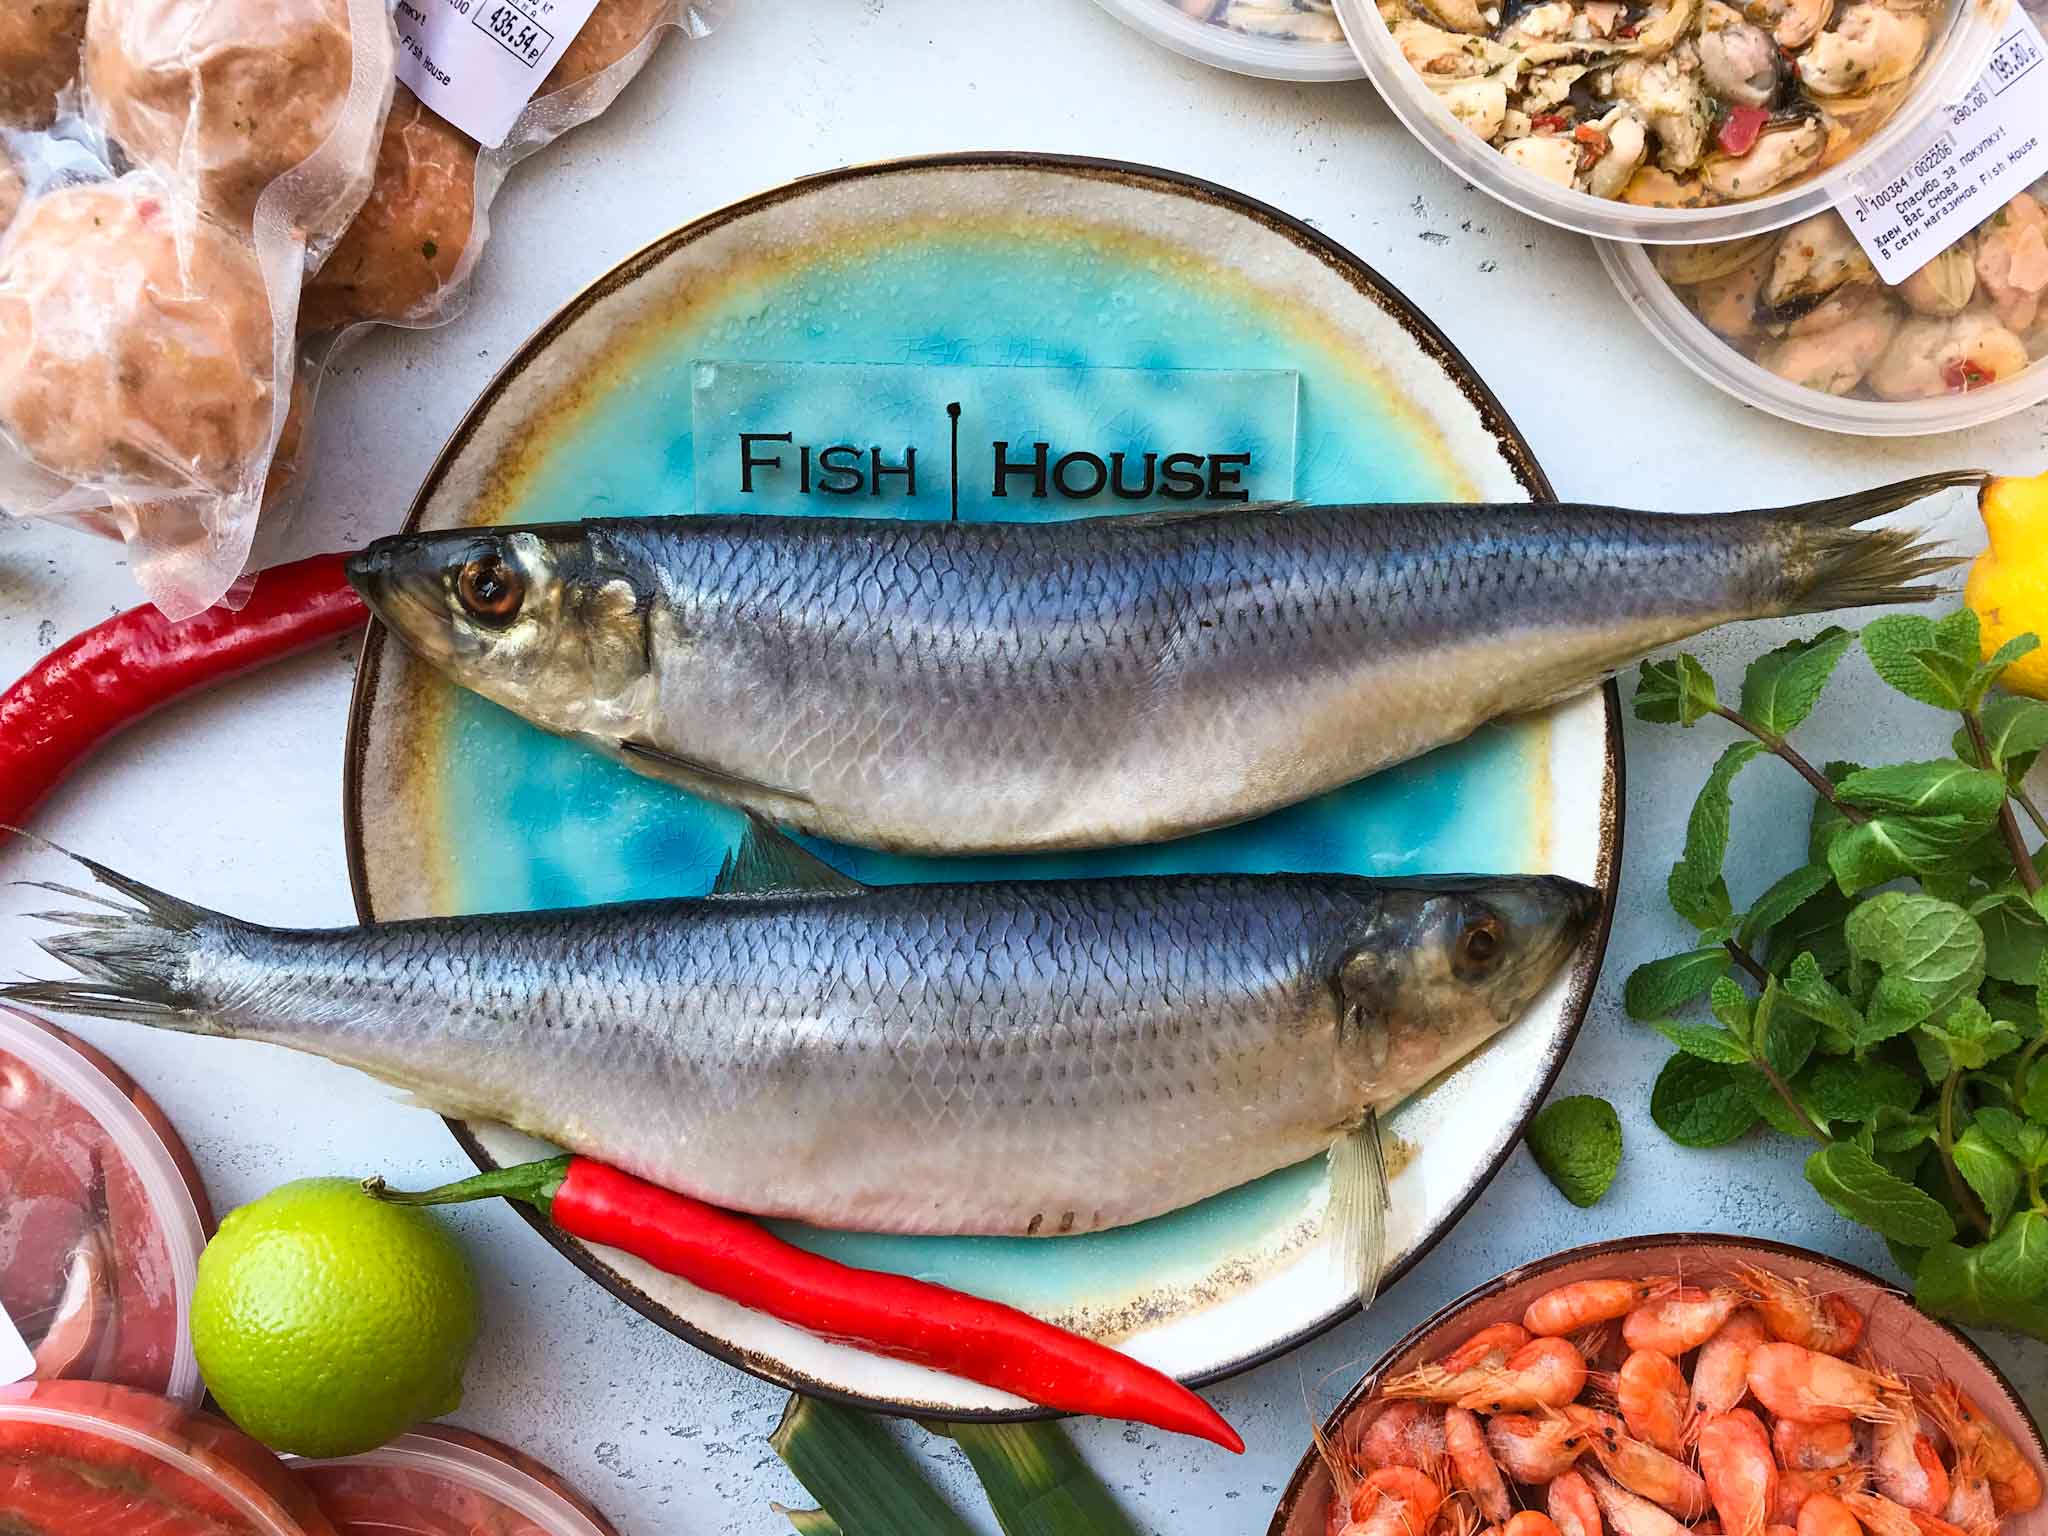 Сельдь атлантическая фото и описание – каталог рыб, смотреть онлайн